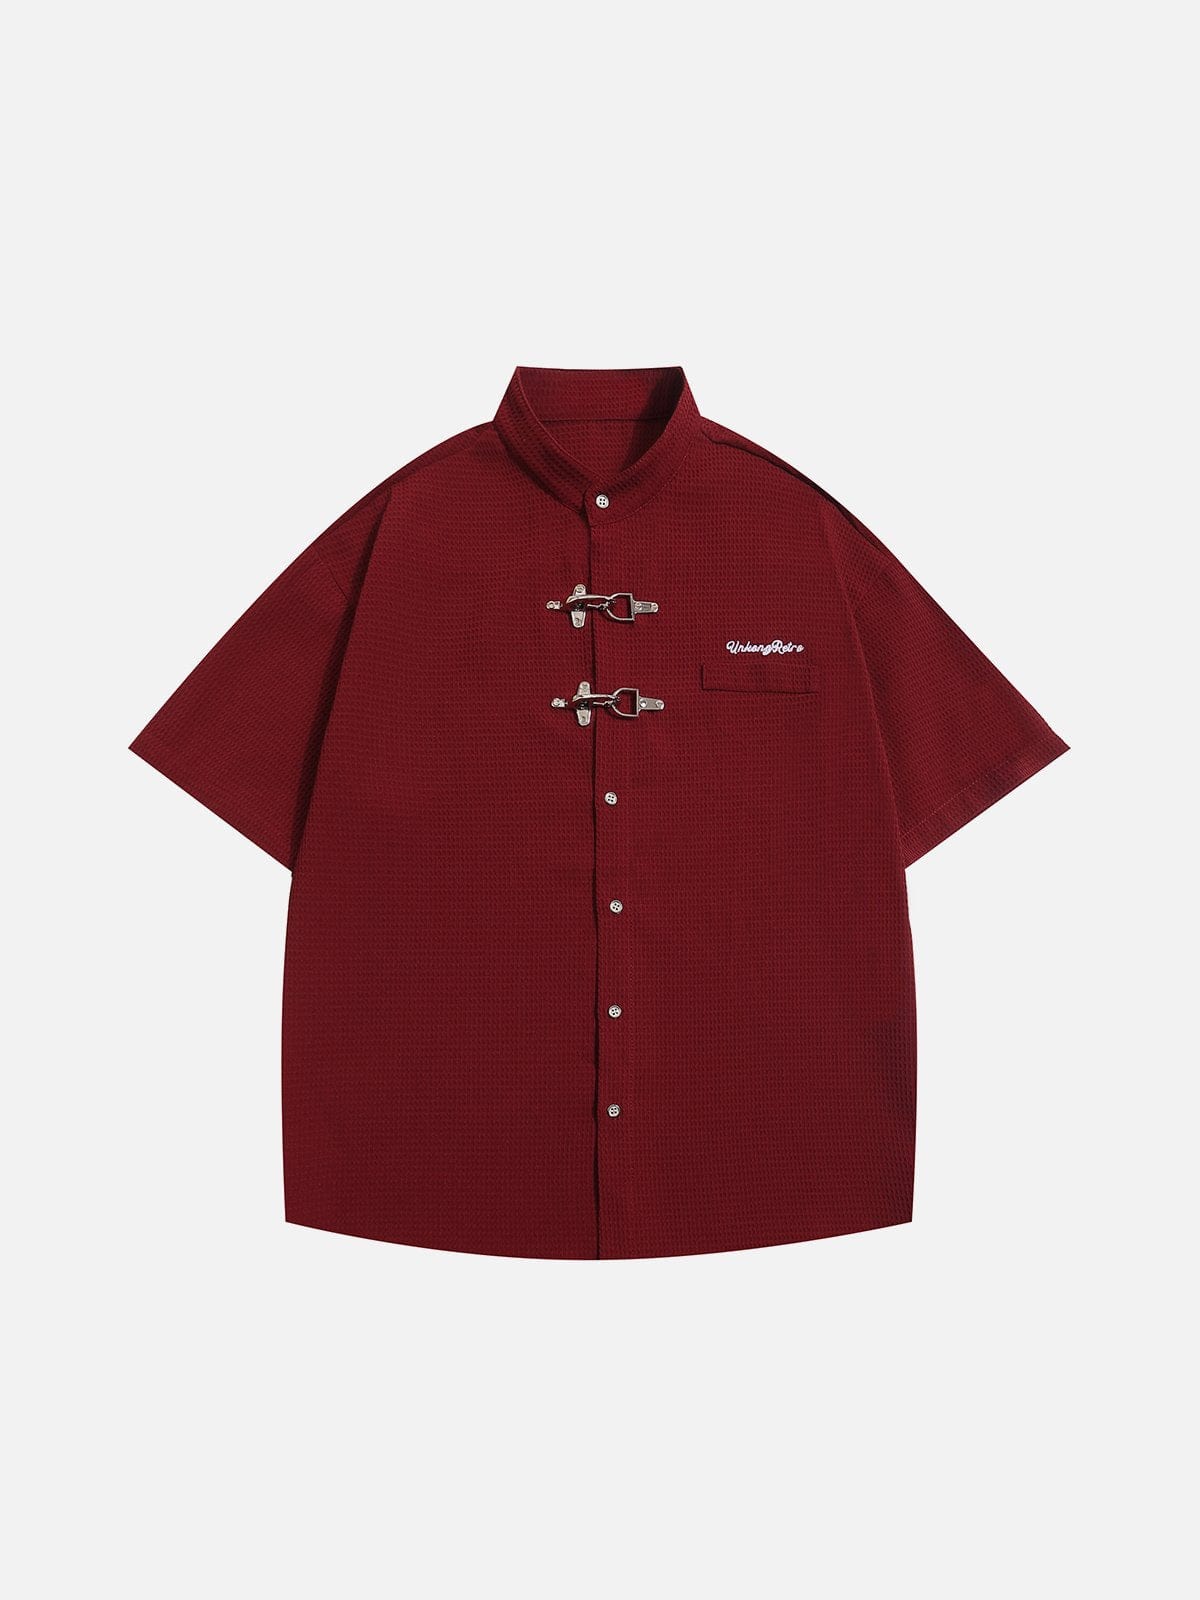 NEV Textured Metal Button Short Sleeve Shirt